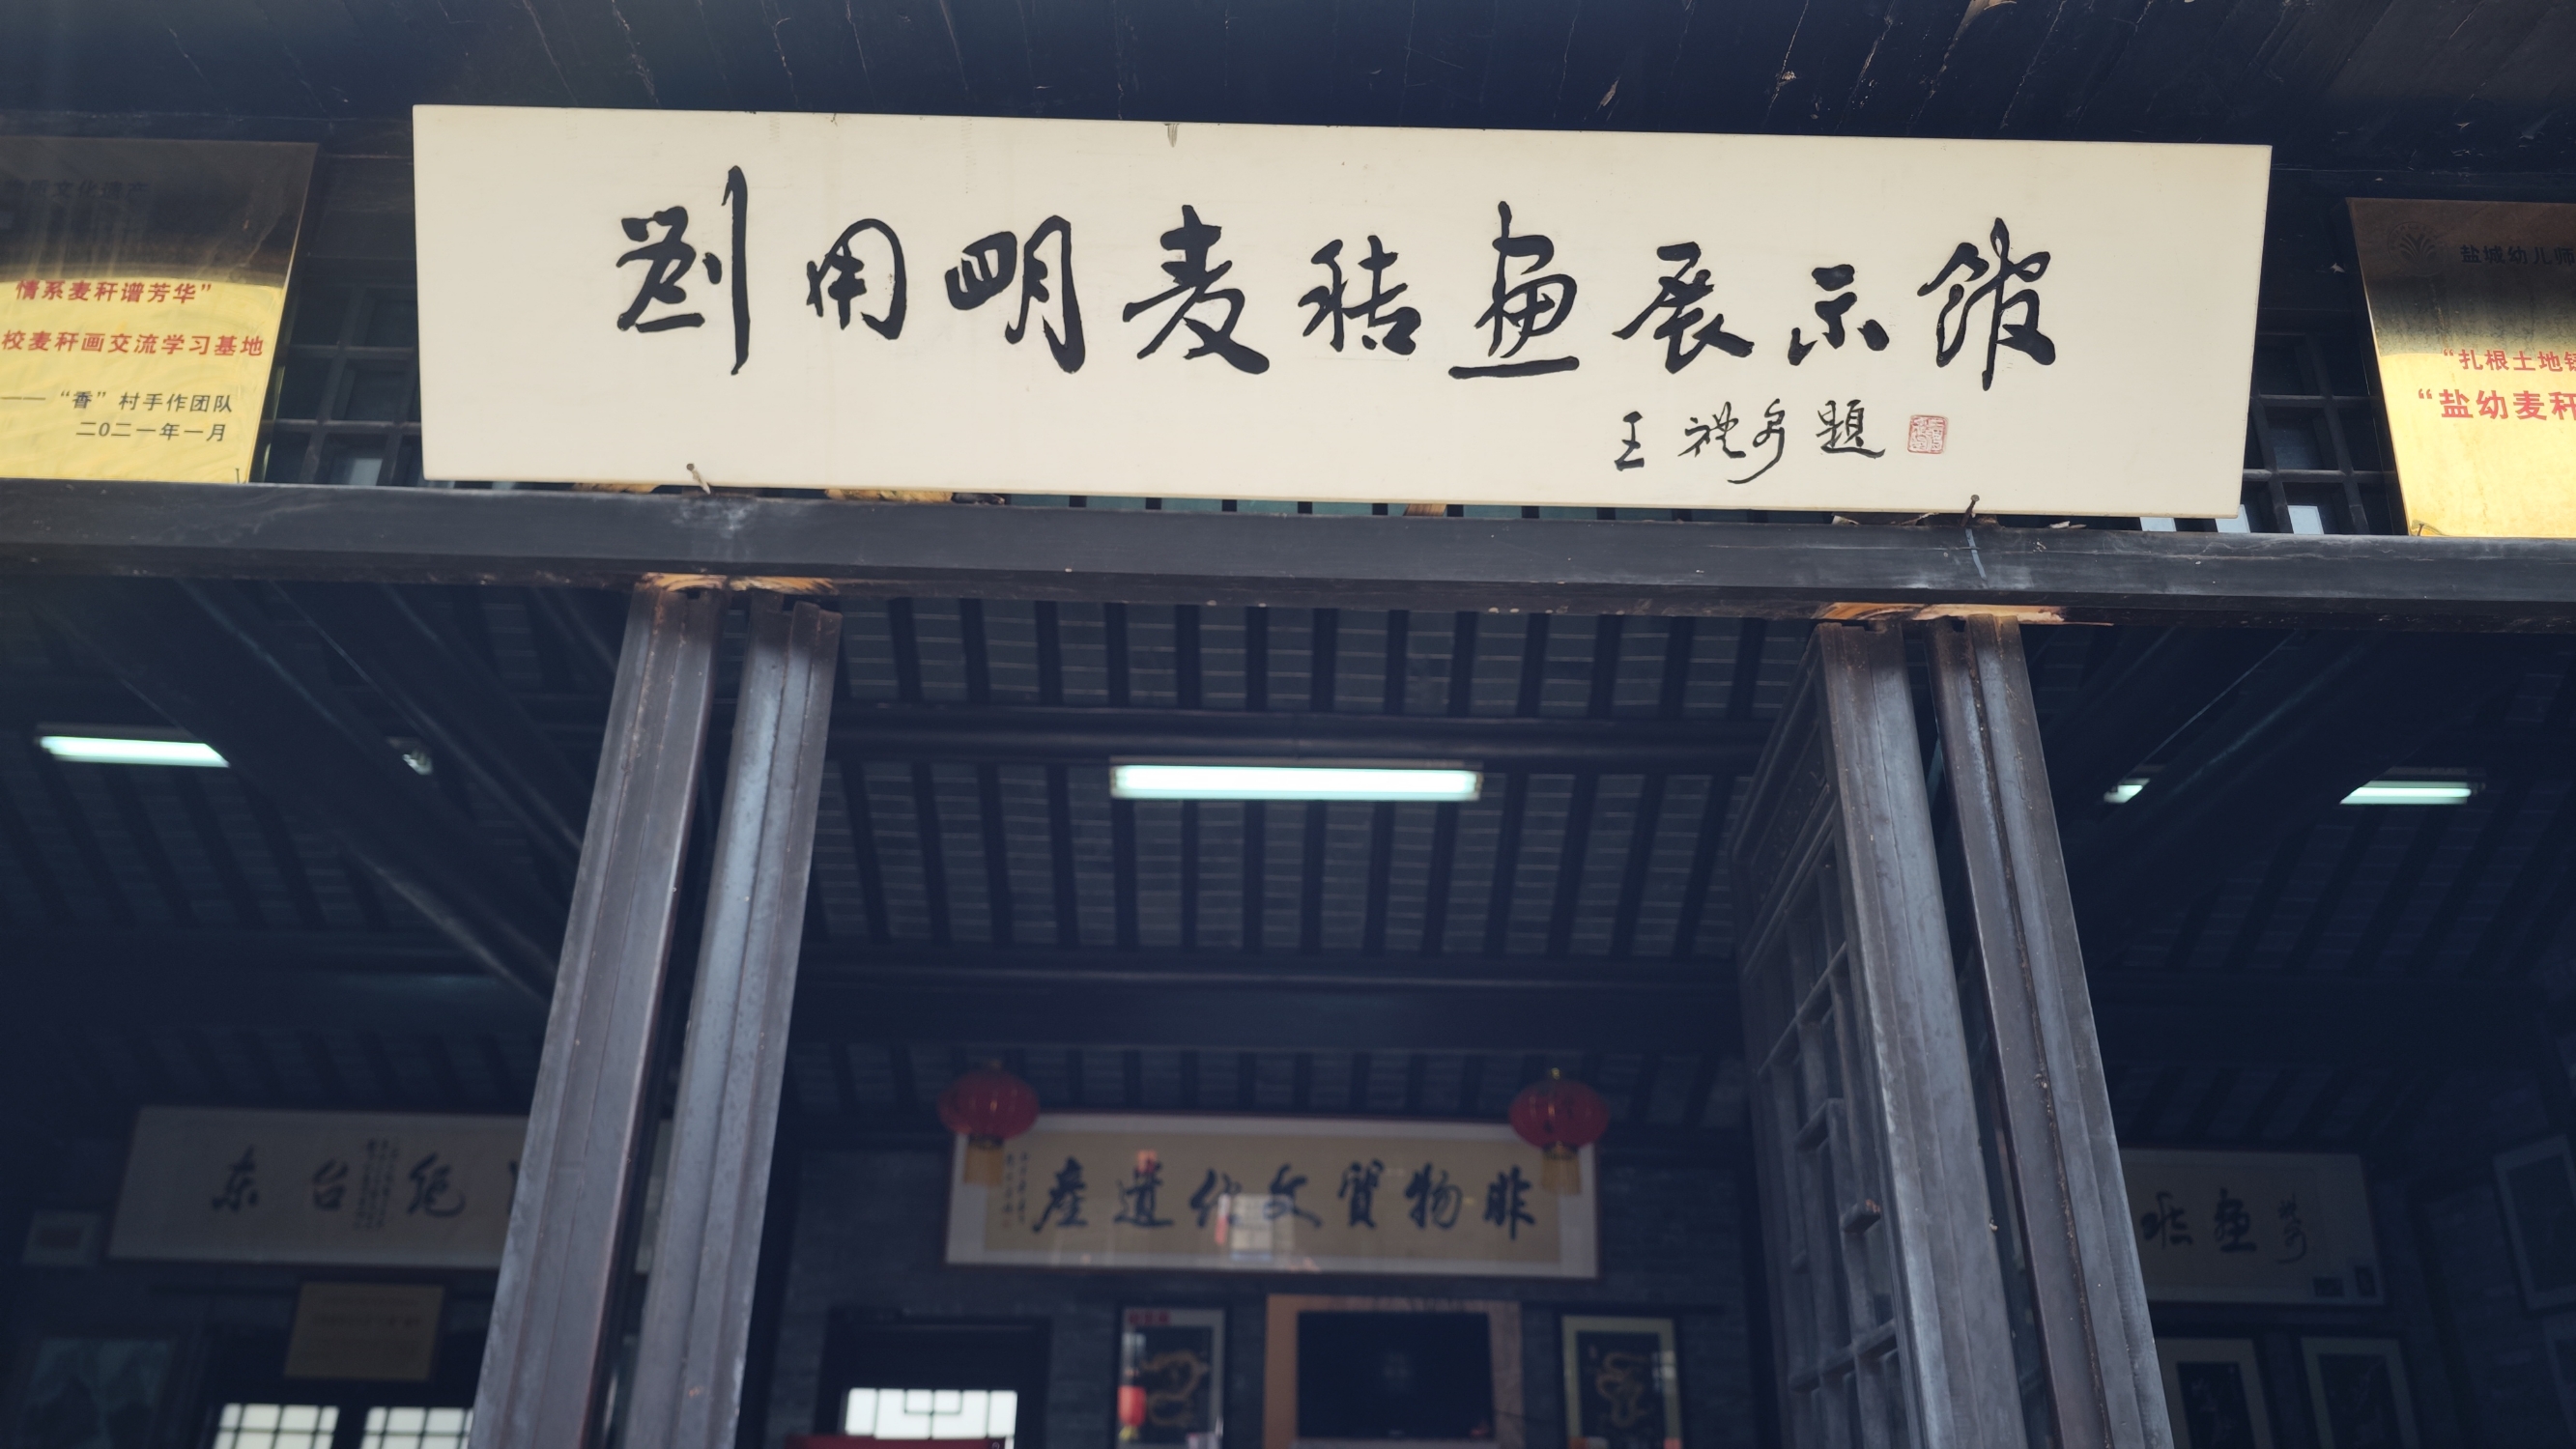 安丰古镇里的刘用明麦秆画展  安丰古镇，这座历史悠久的文化名城，承载着丰富的历史底蕴和人文情怀。在这